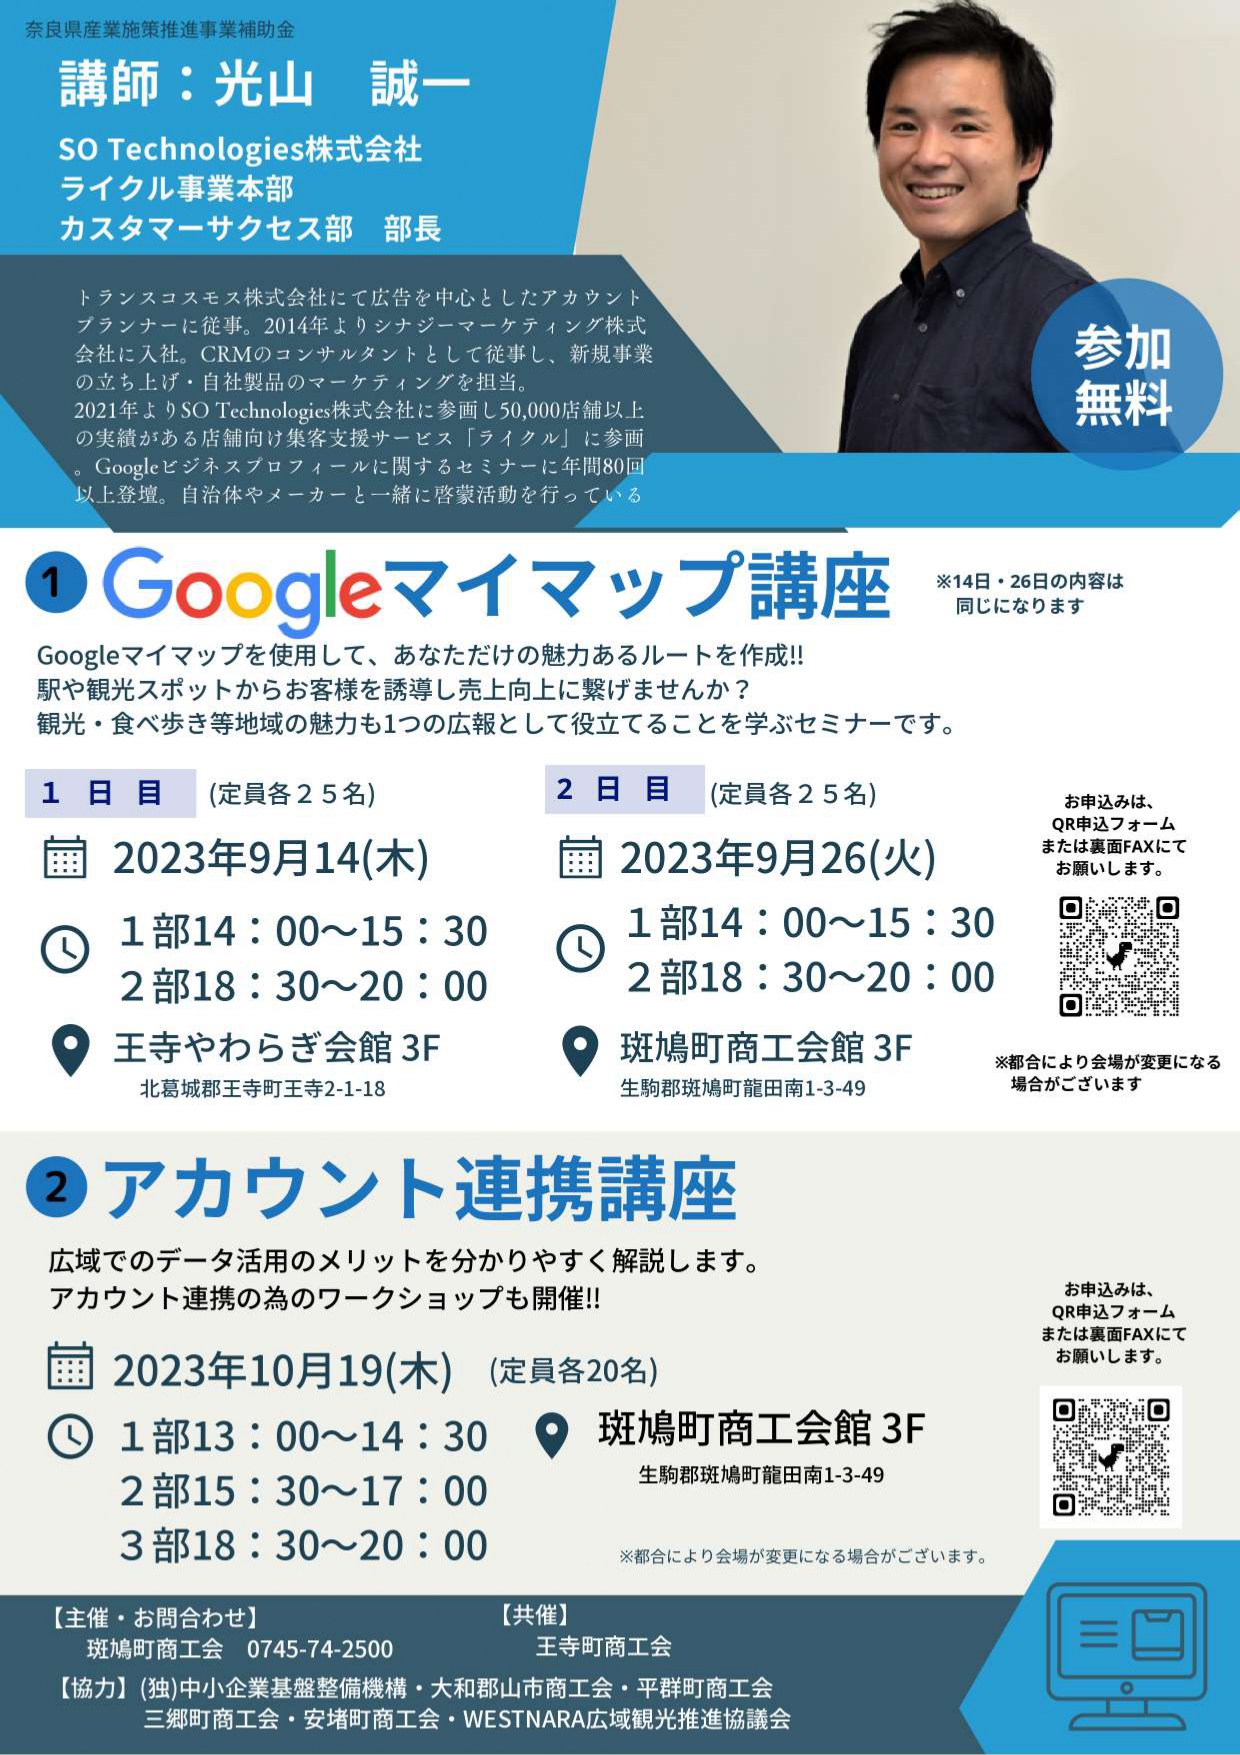 『Googleマイマップ・アカウント連携講座』開催のお知らせ